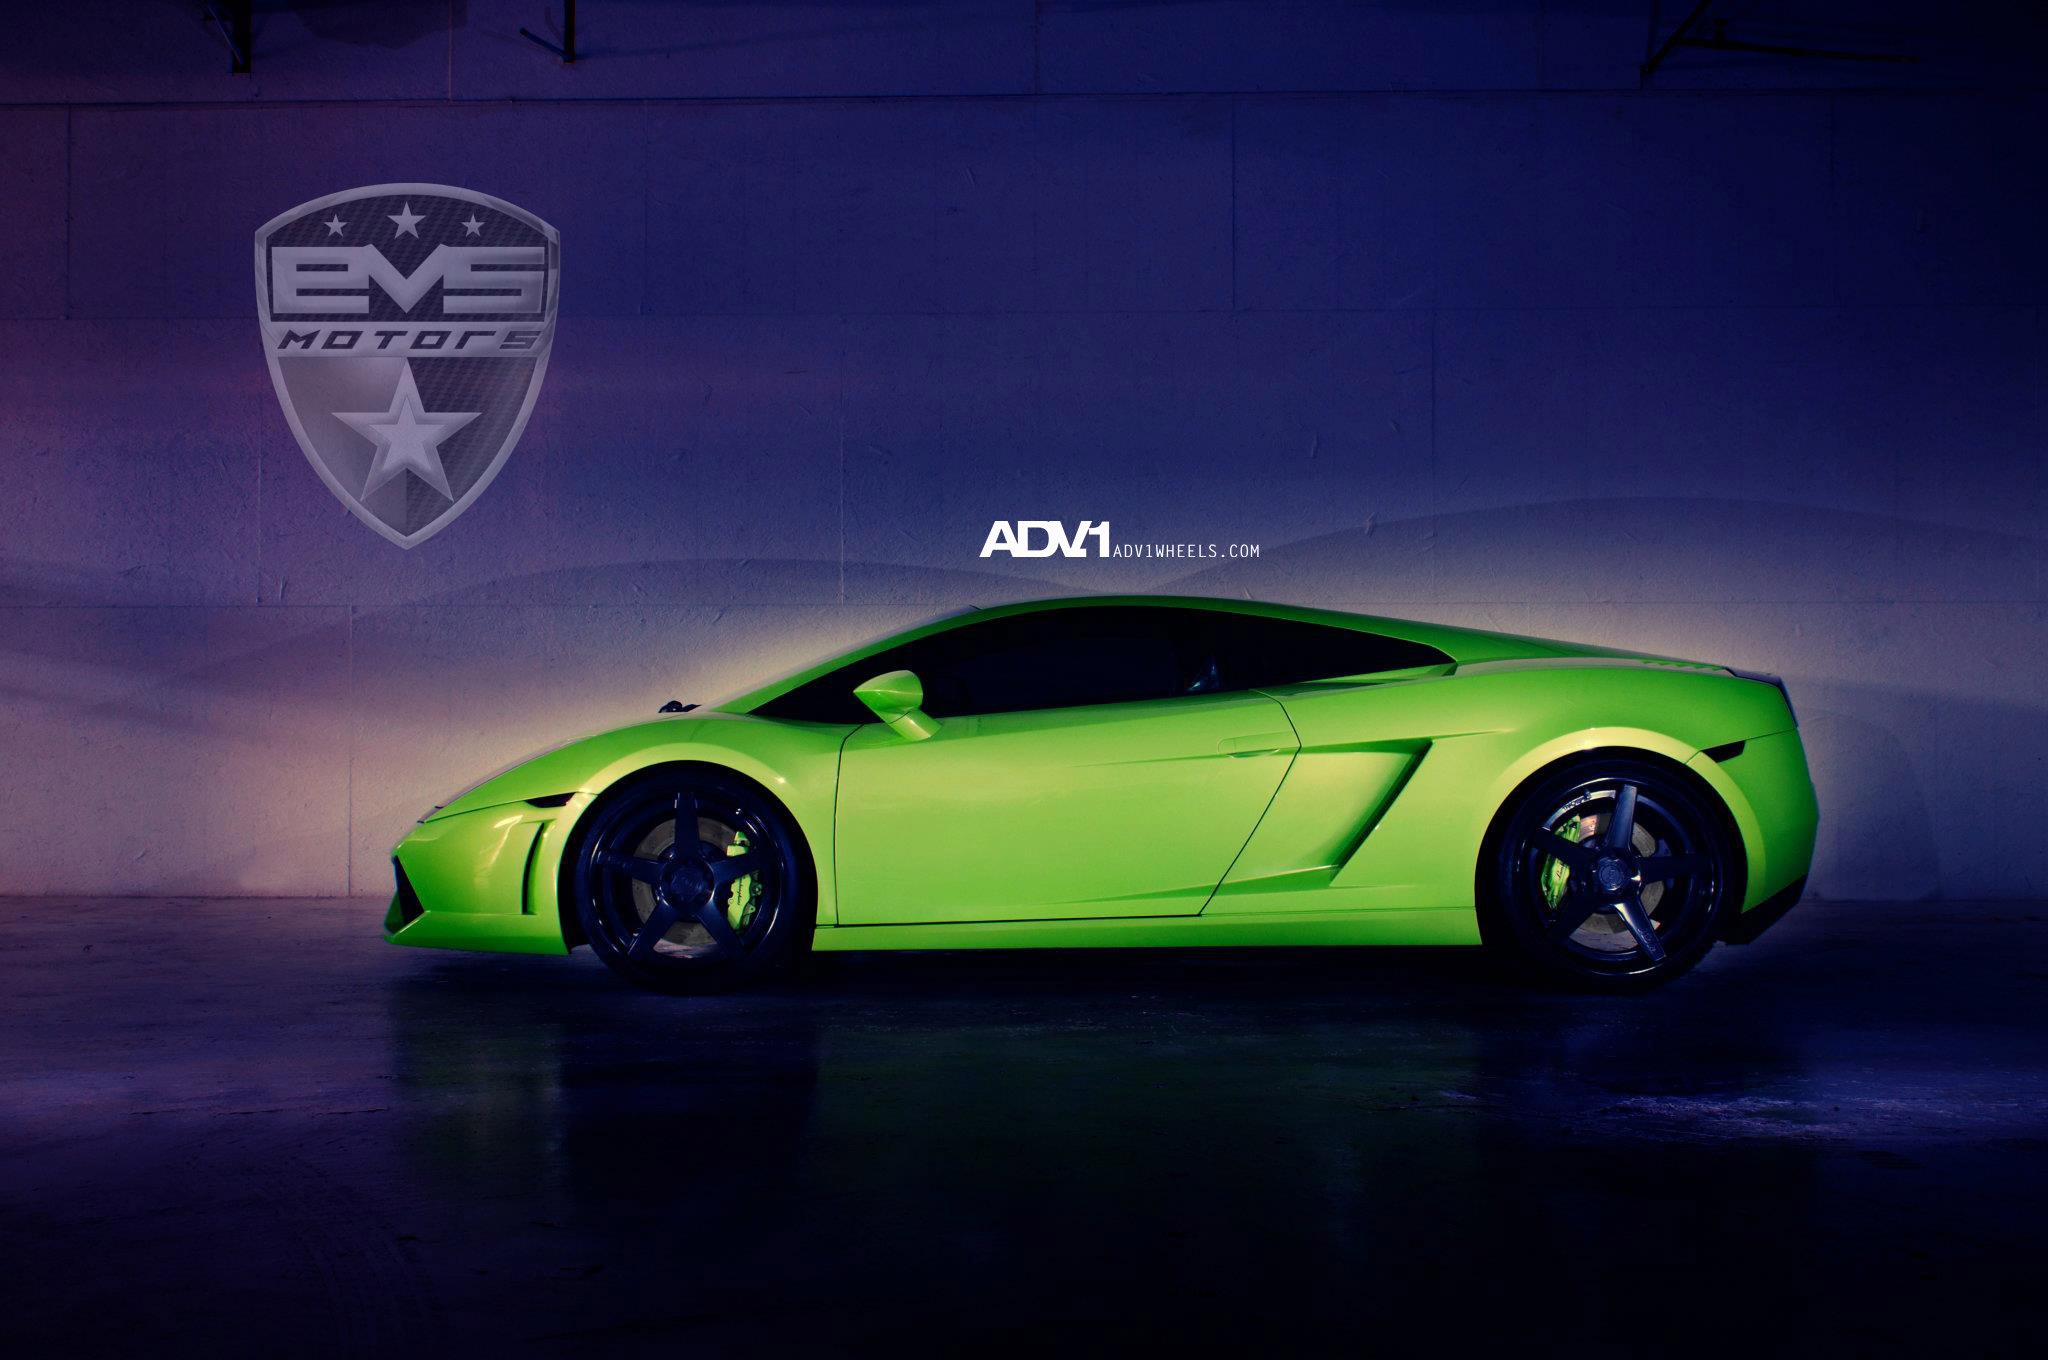 Gloss Black ADV1 Wheels on Green Lamborghini Gallardo - Photo by ADV.1